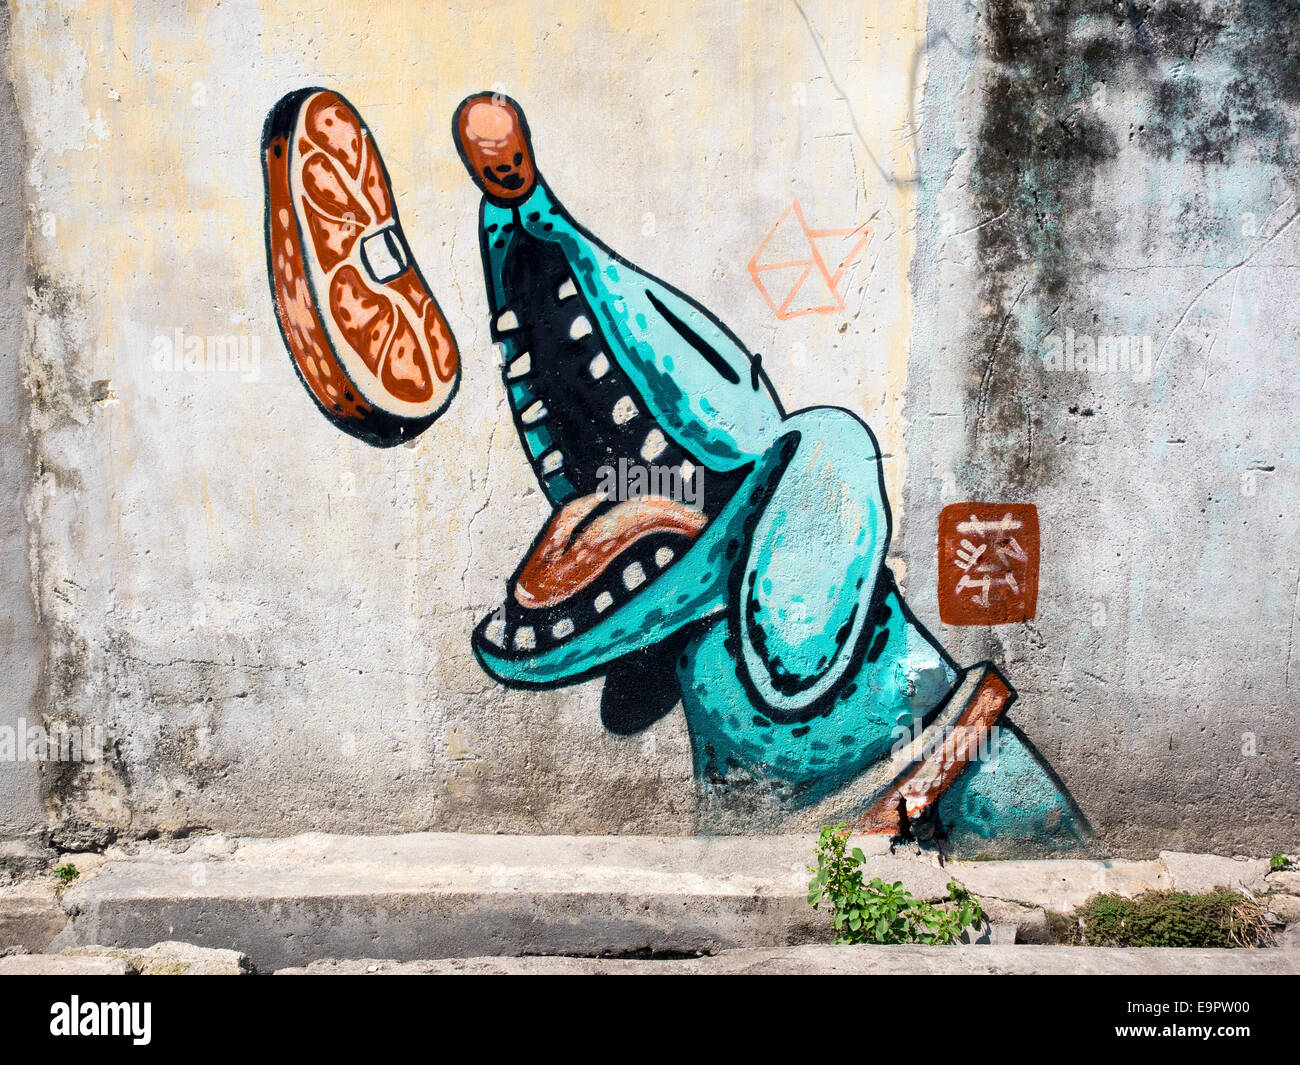 Pieza de Street art ilustrando famoso Año Nuevo chino "Danza del León" en la ciudad de George, Penang, Malasia. Foto de stock